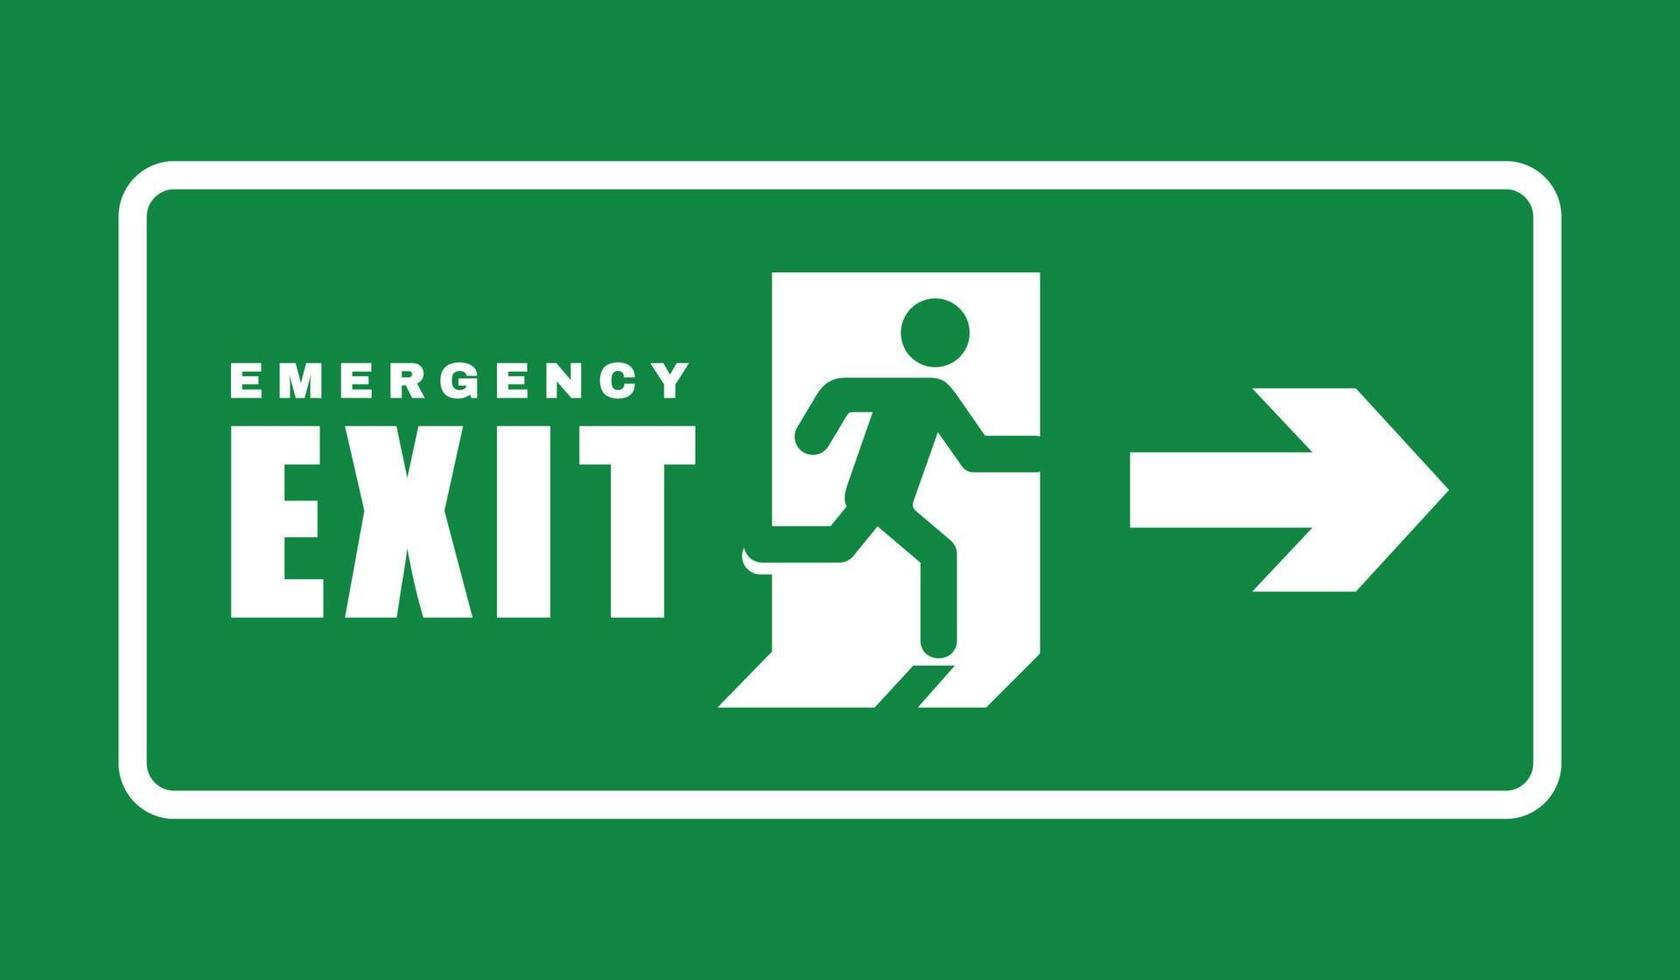 símbolo da porta de saída. vetor de símbolo de evacuação